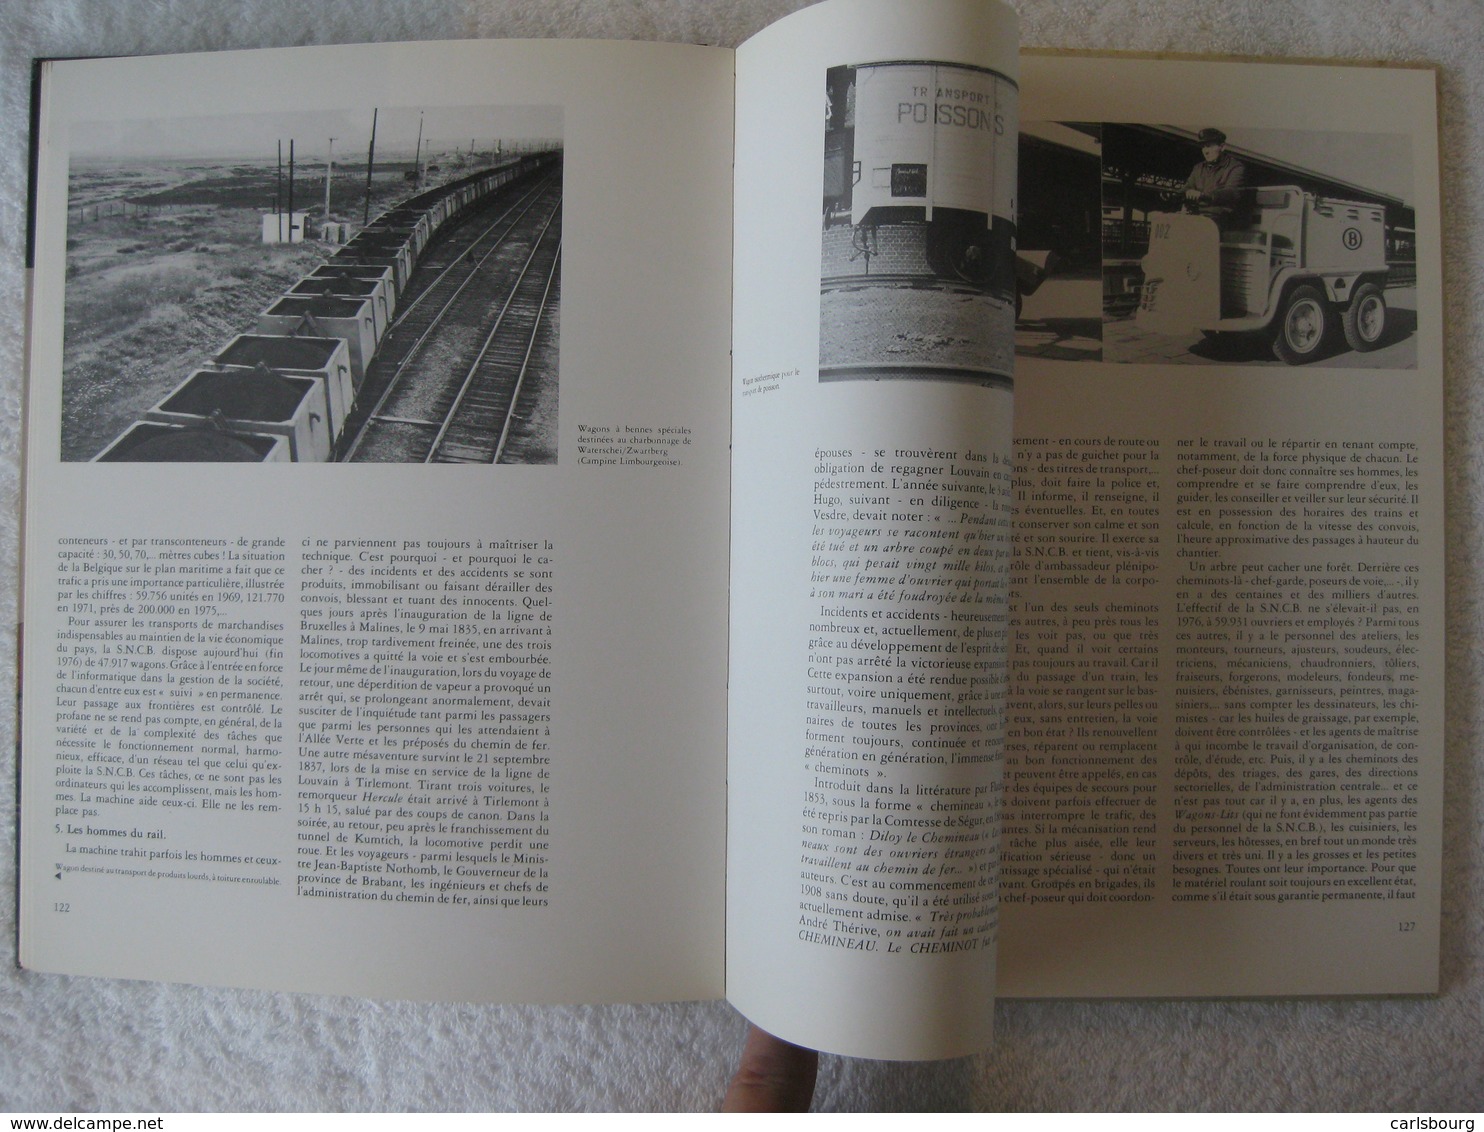 Chemins de fer belges SNCB – Joseph Delmelle - EO 1977 – bel ouvrage documentaire